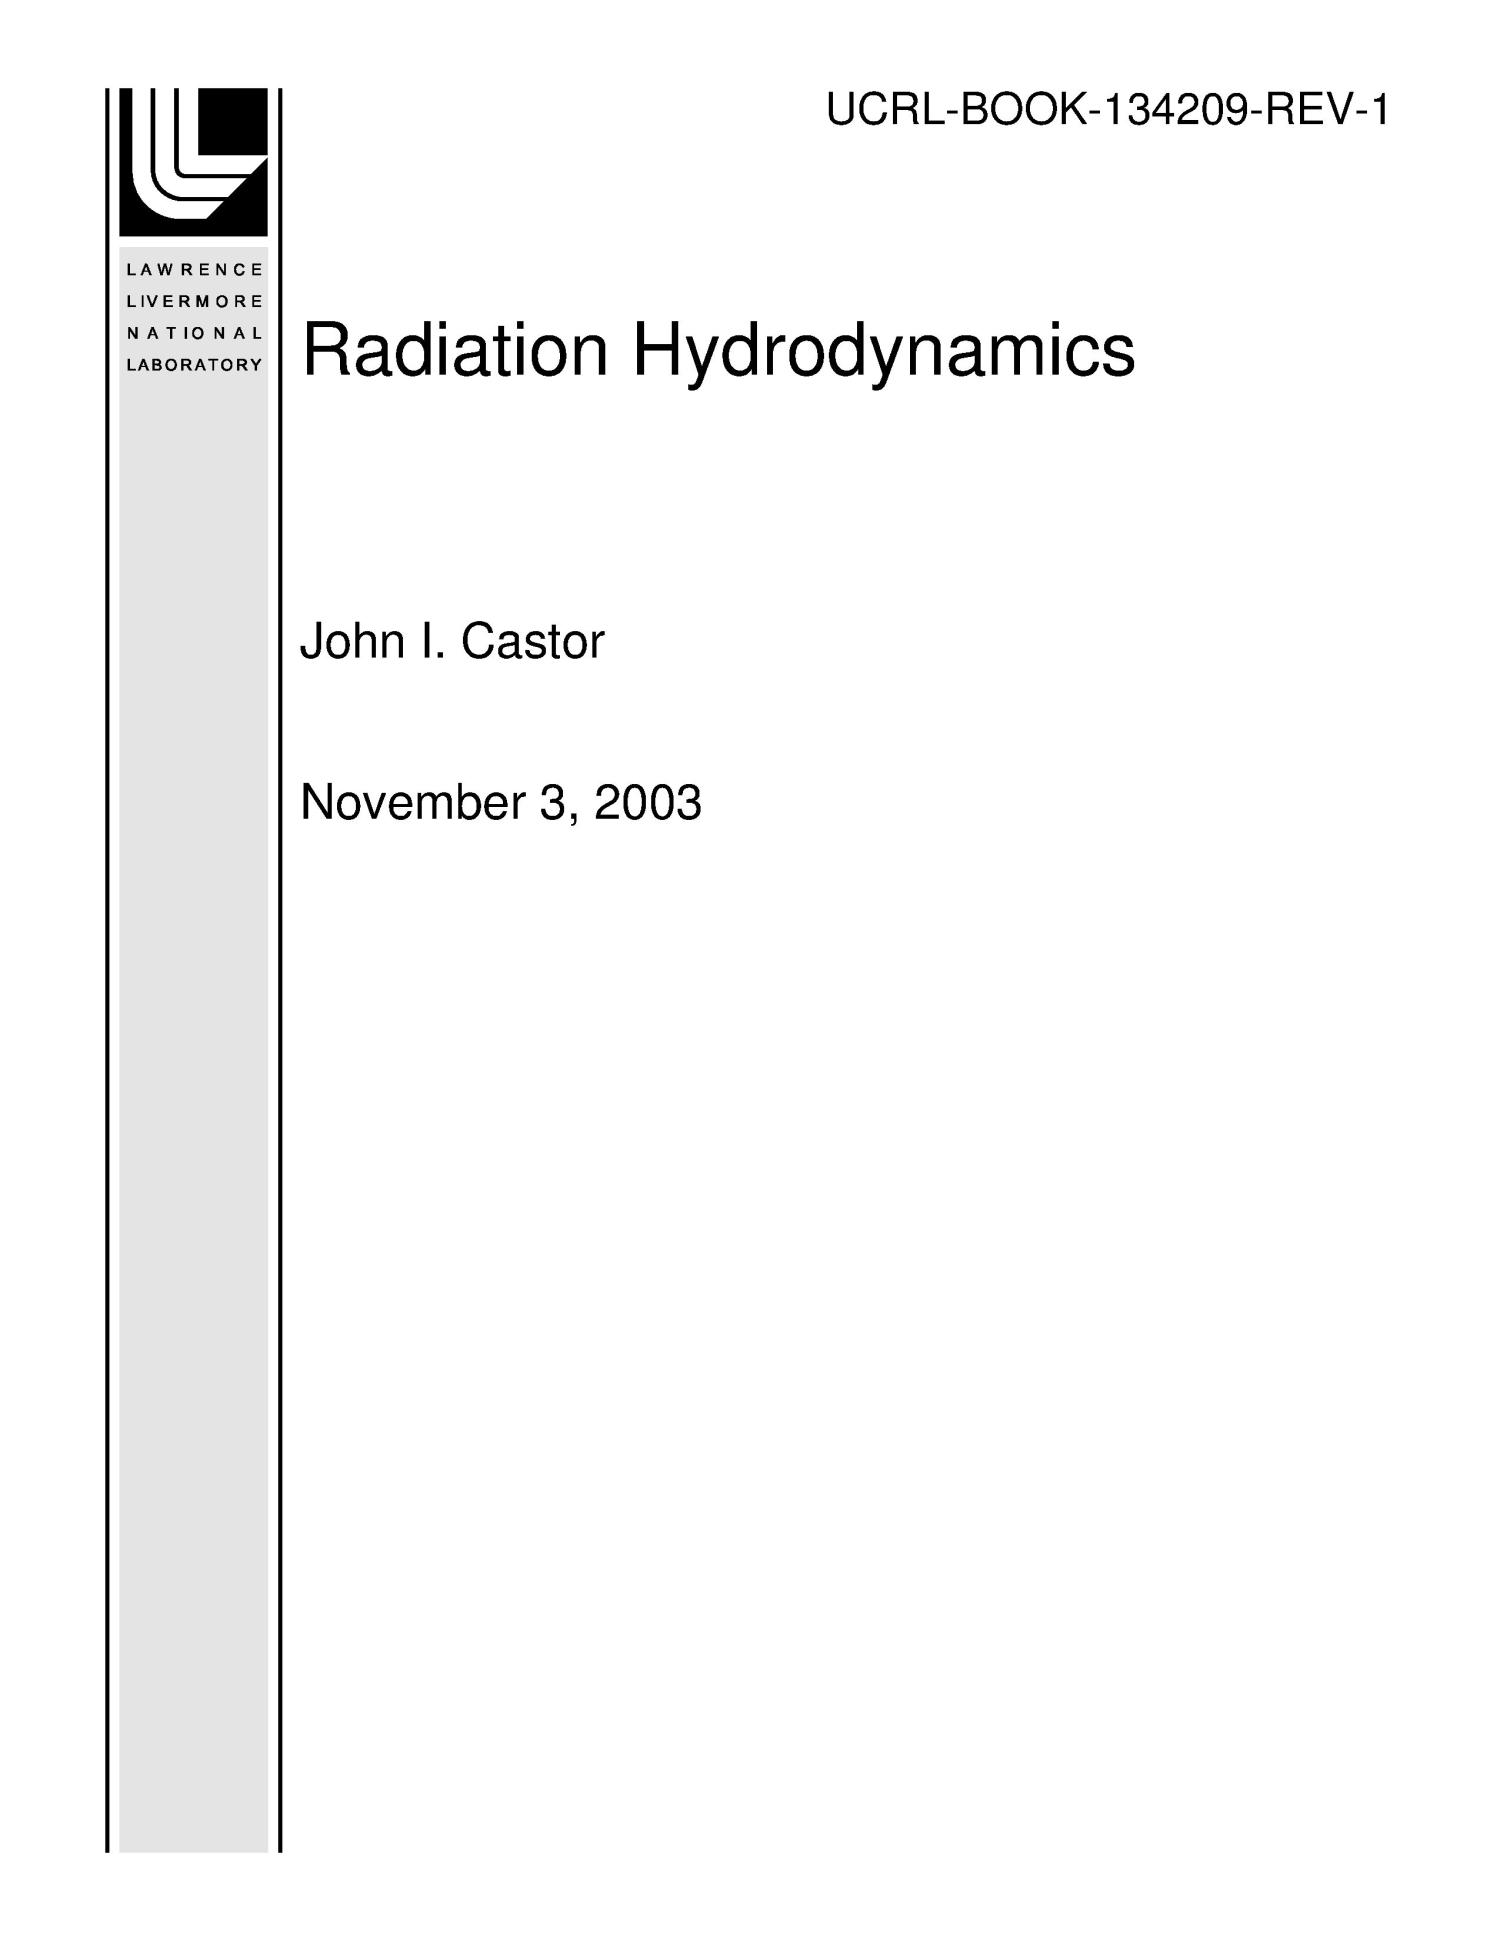 Radiation Hydrodynamics - UNT Digital Library